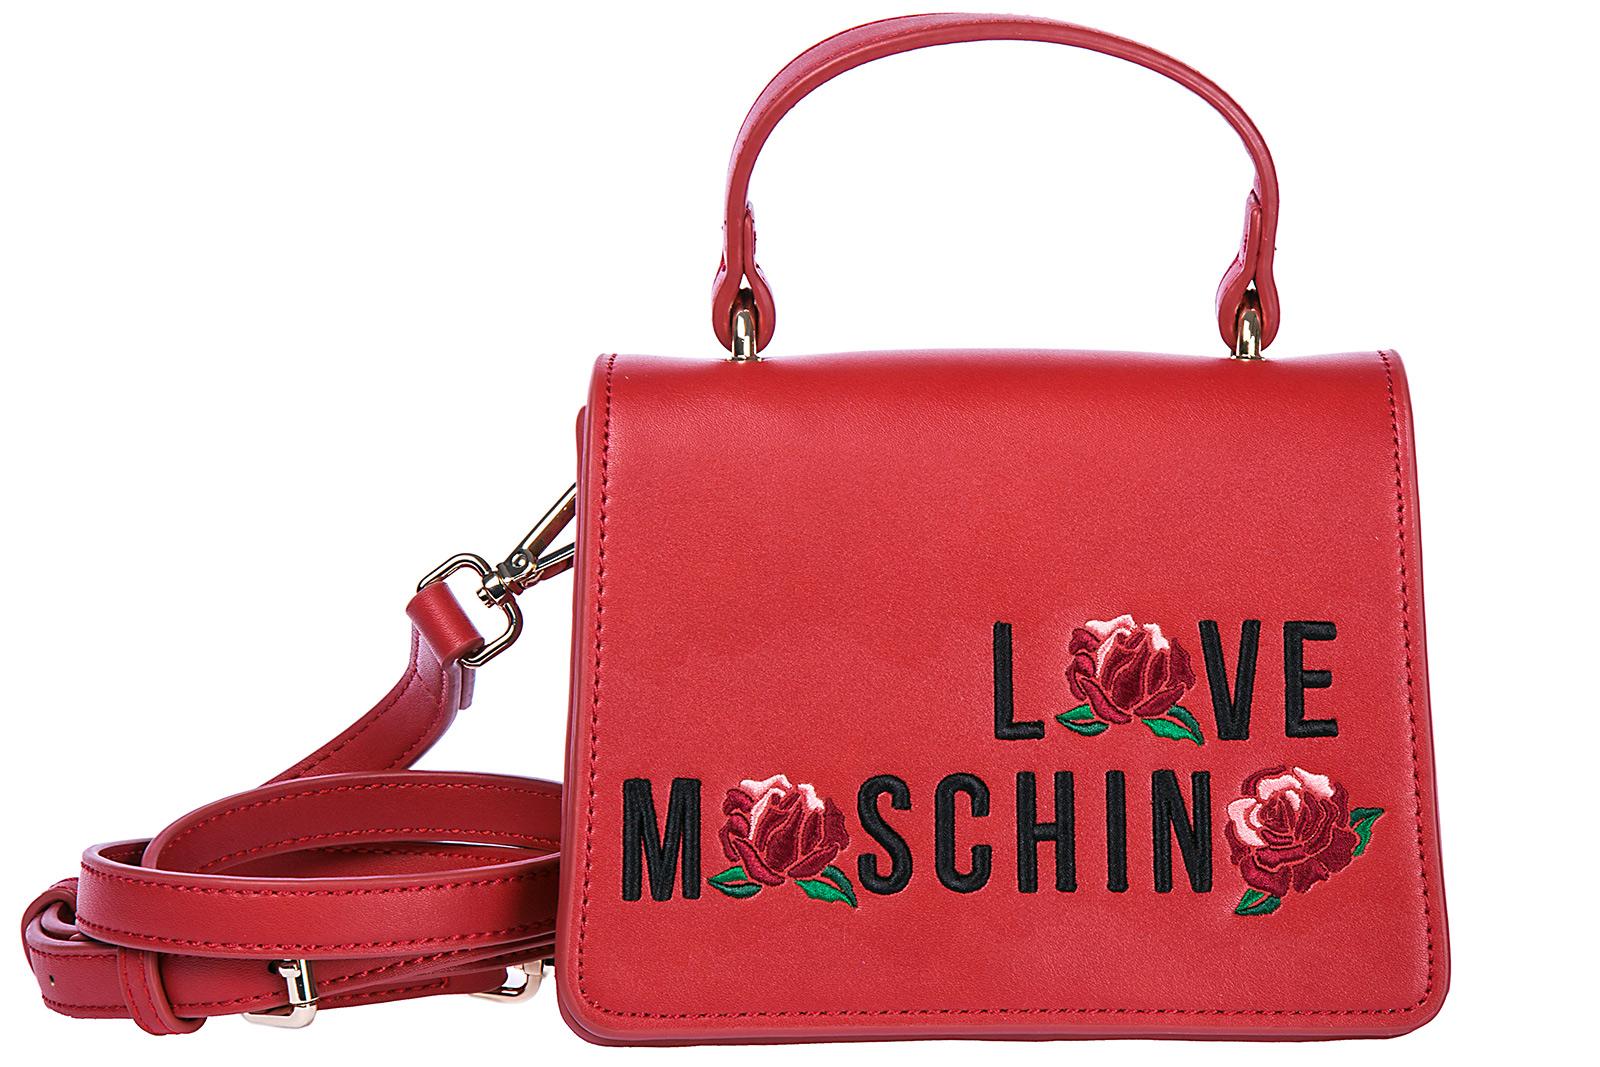 love moschino women's handbag